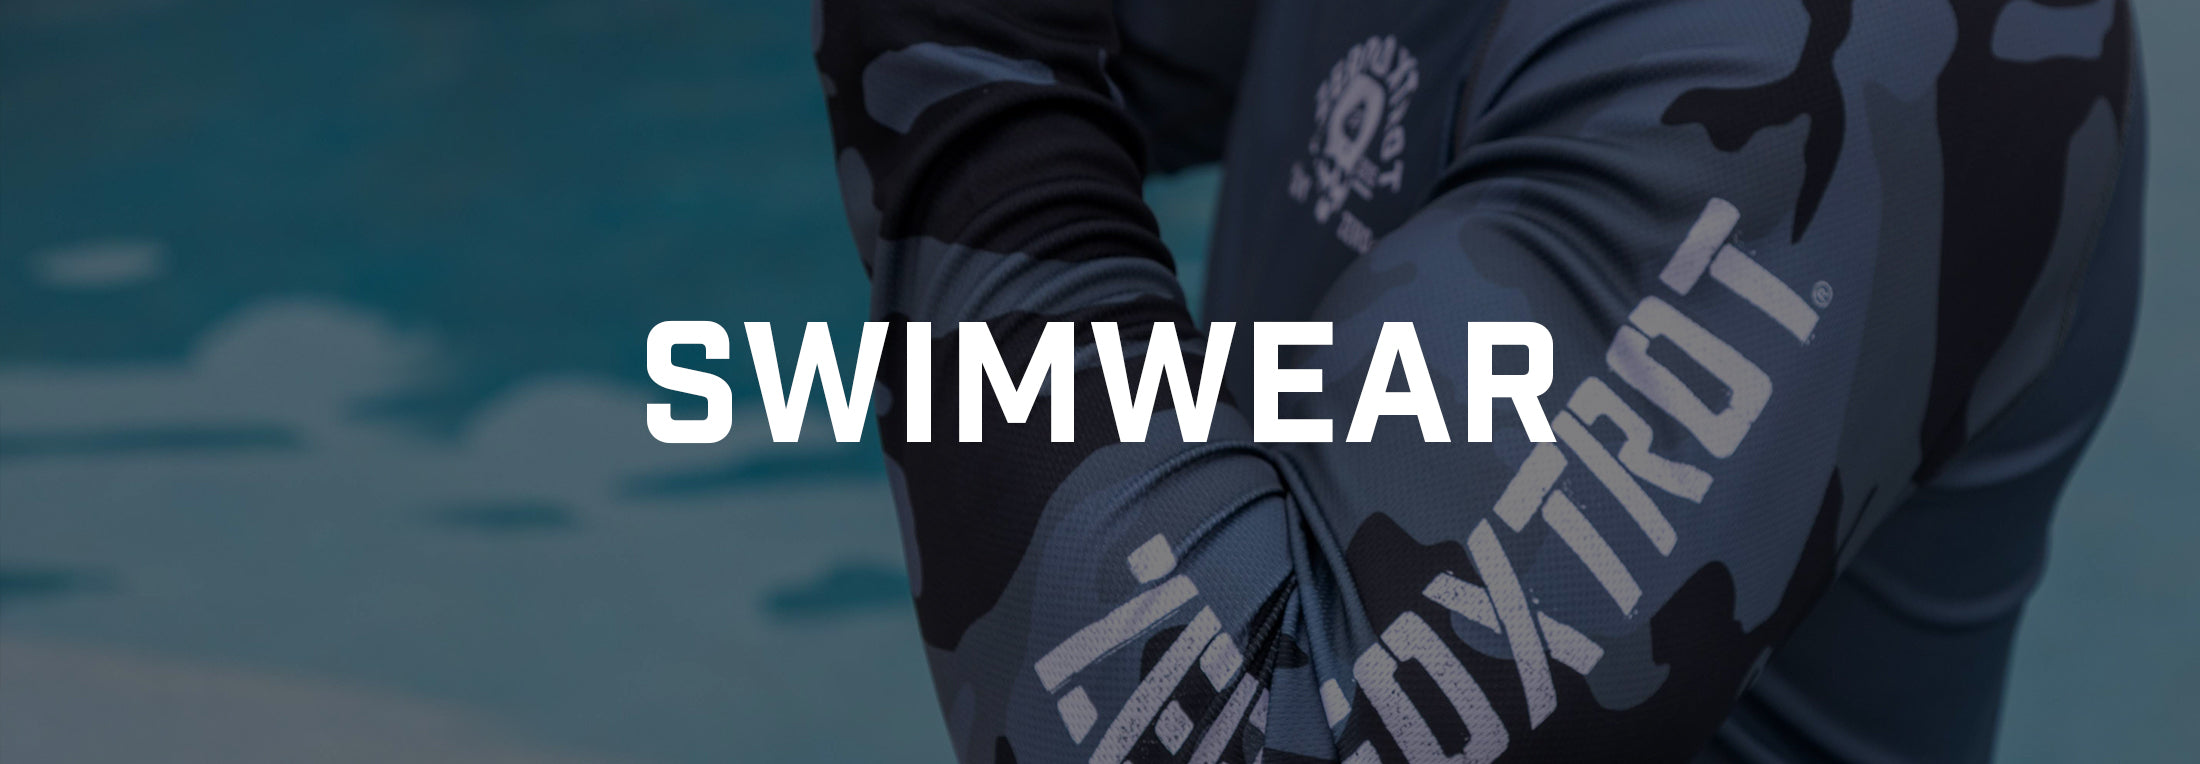 Swim Gear